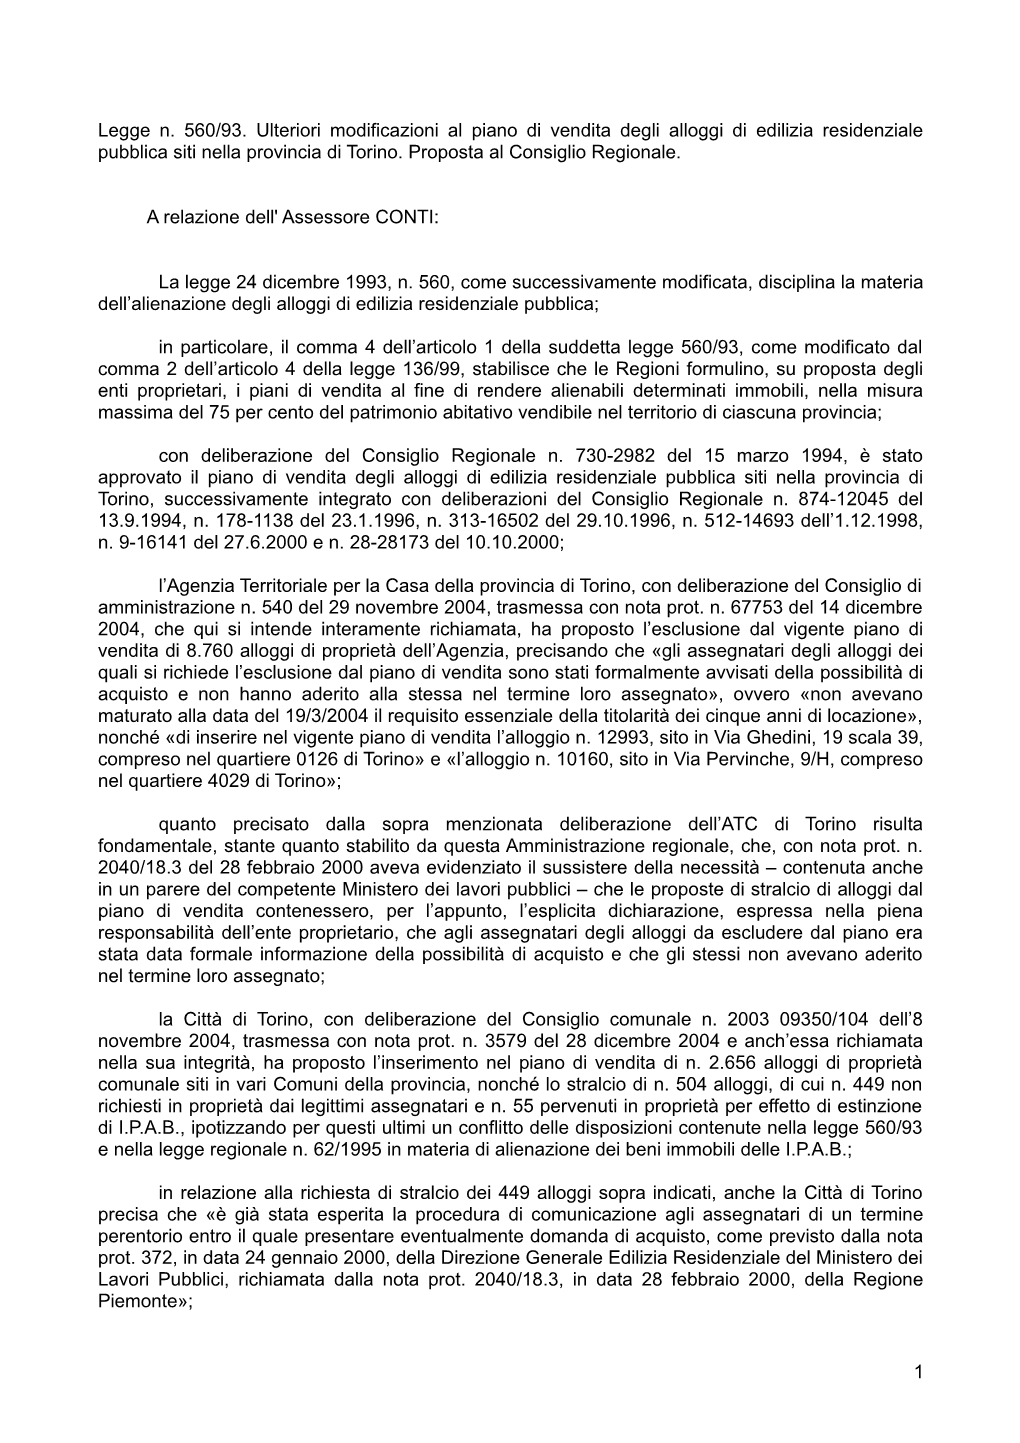 Legge N. 560/93. Ulteriori Modificazioni Al Piano Di Vendita Degli Alloggi Di Edilizia Residenziale Pubblica Siti Nella Provincia Di Torino